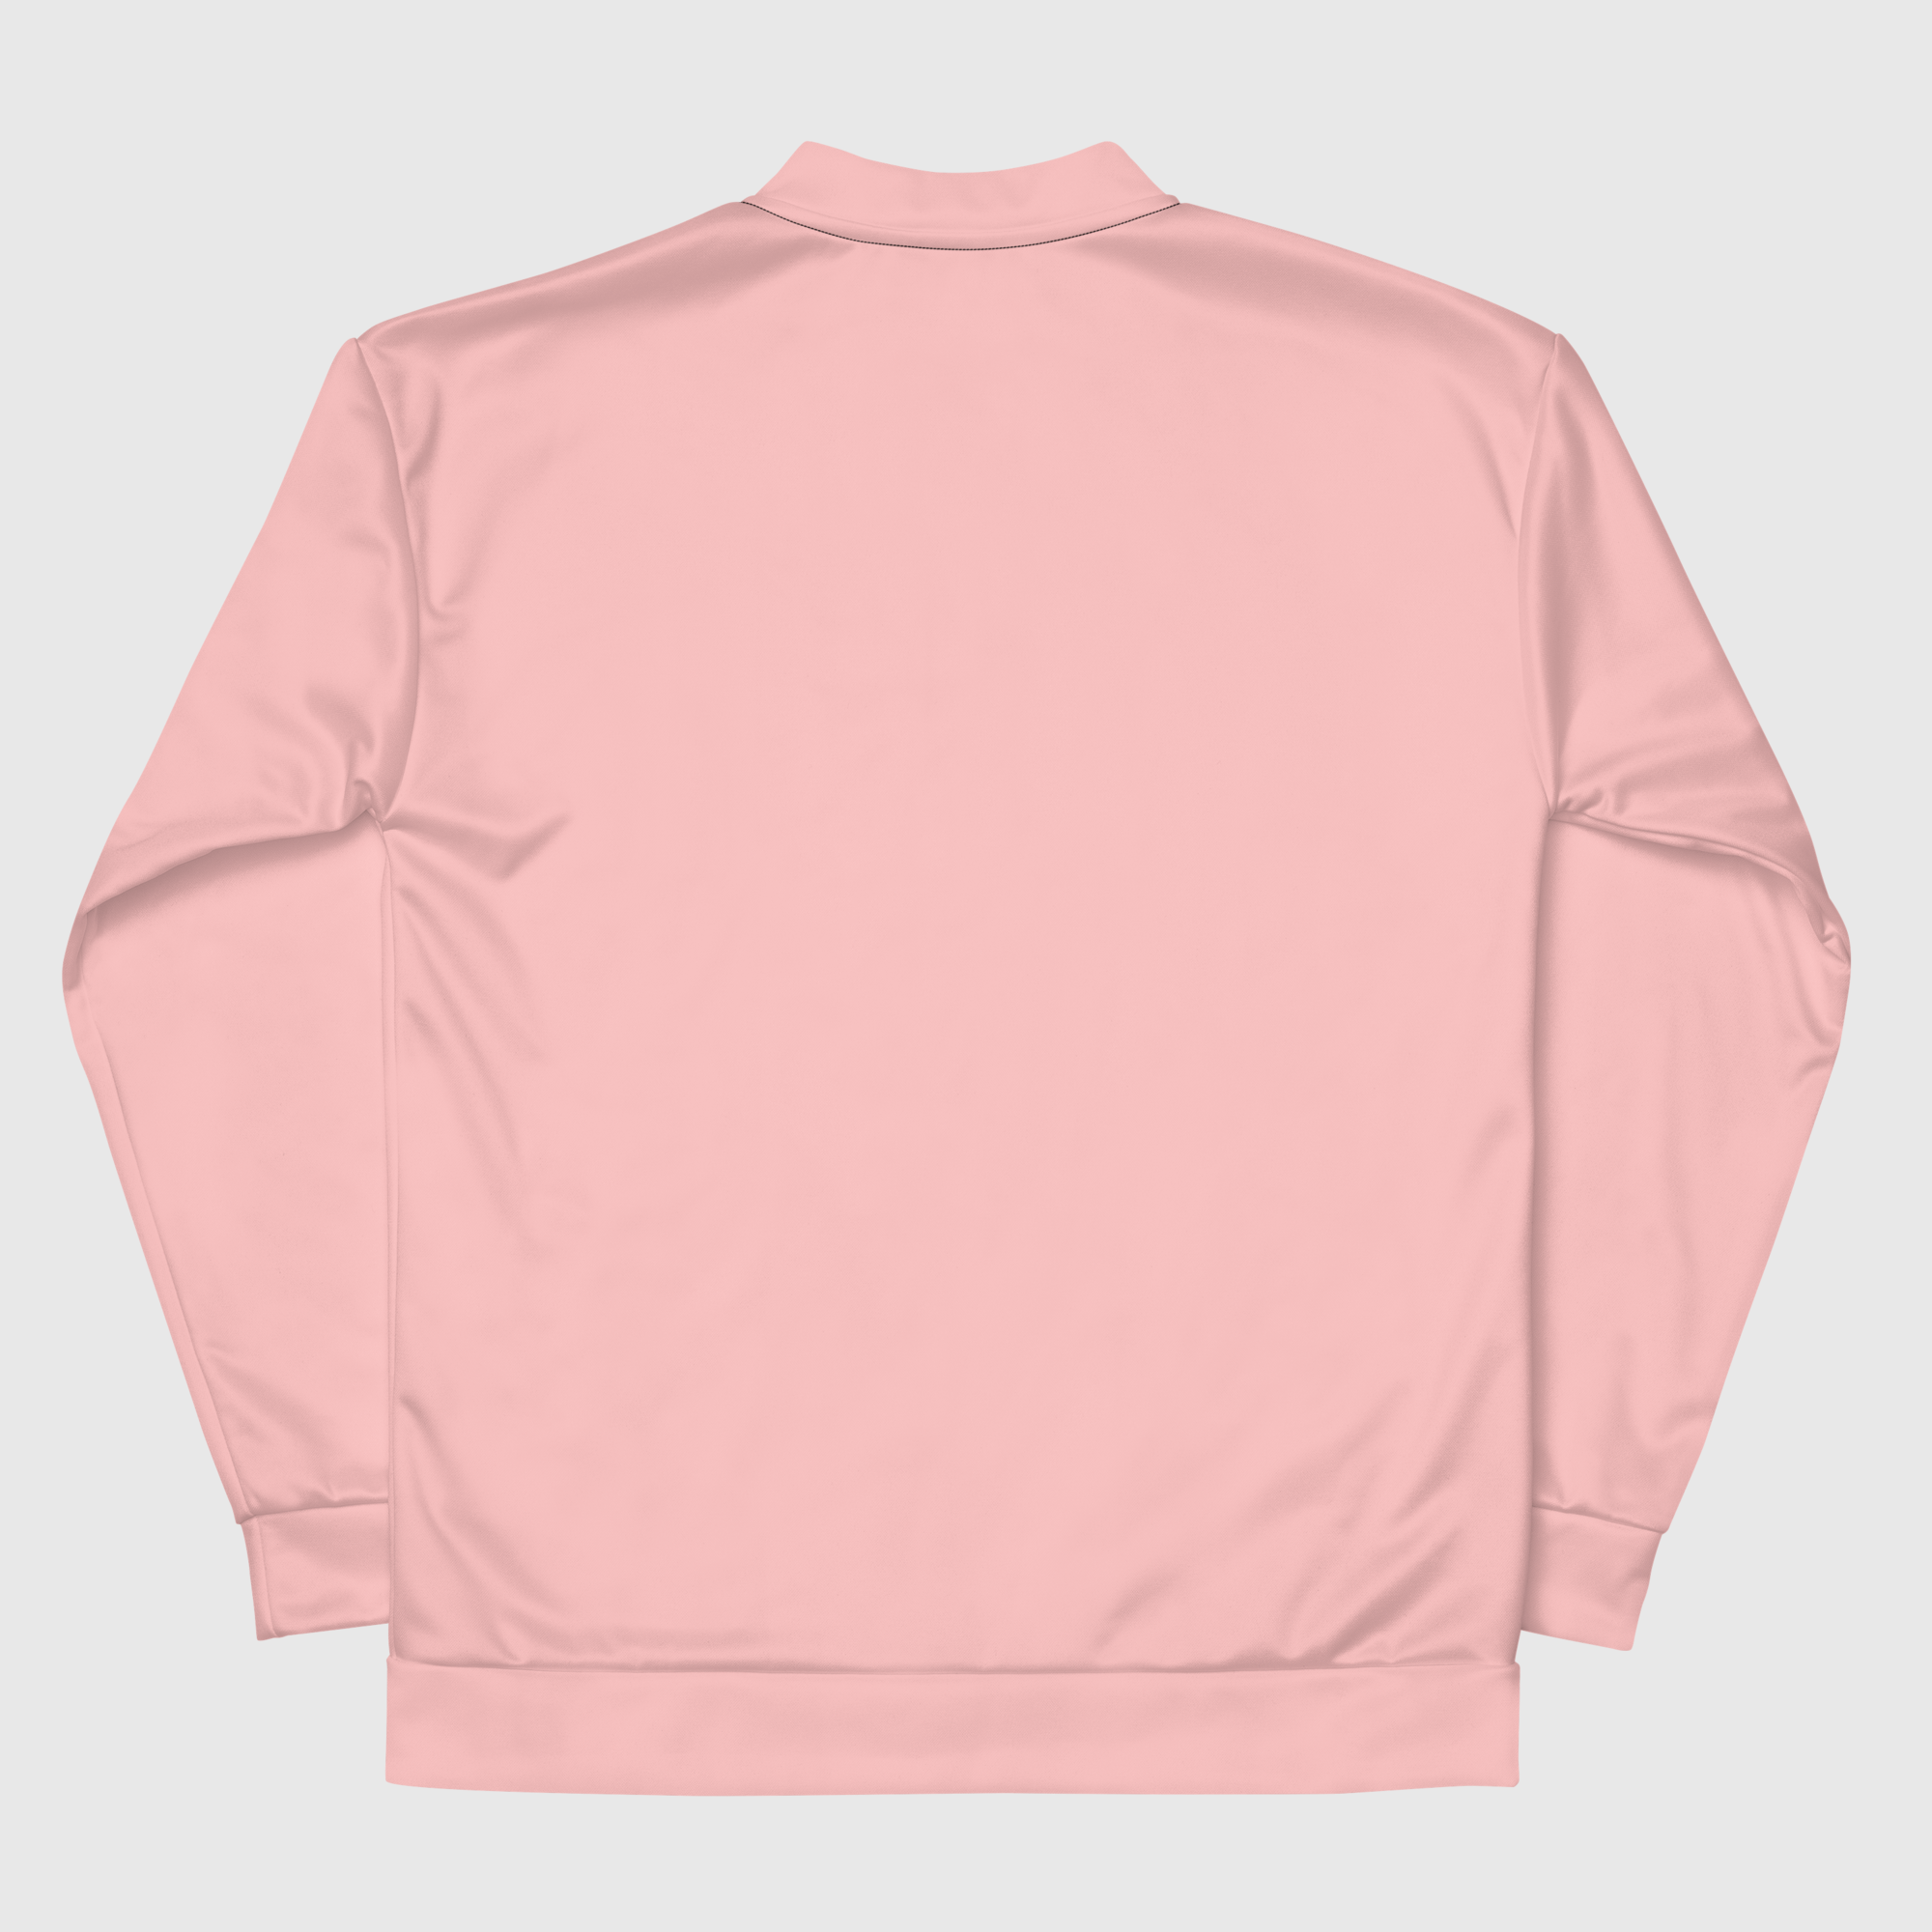 Unisex Bomber Jacket - Pink